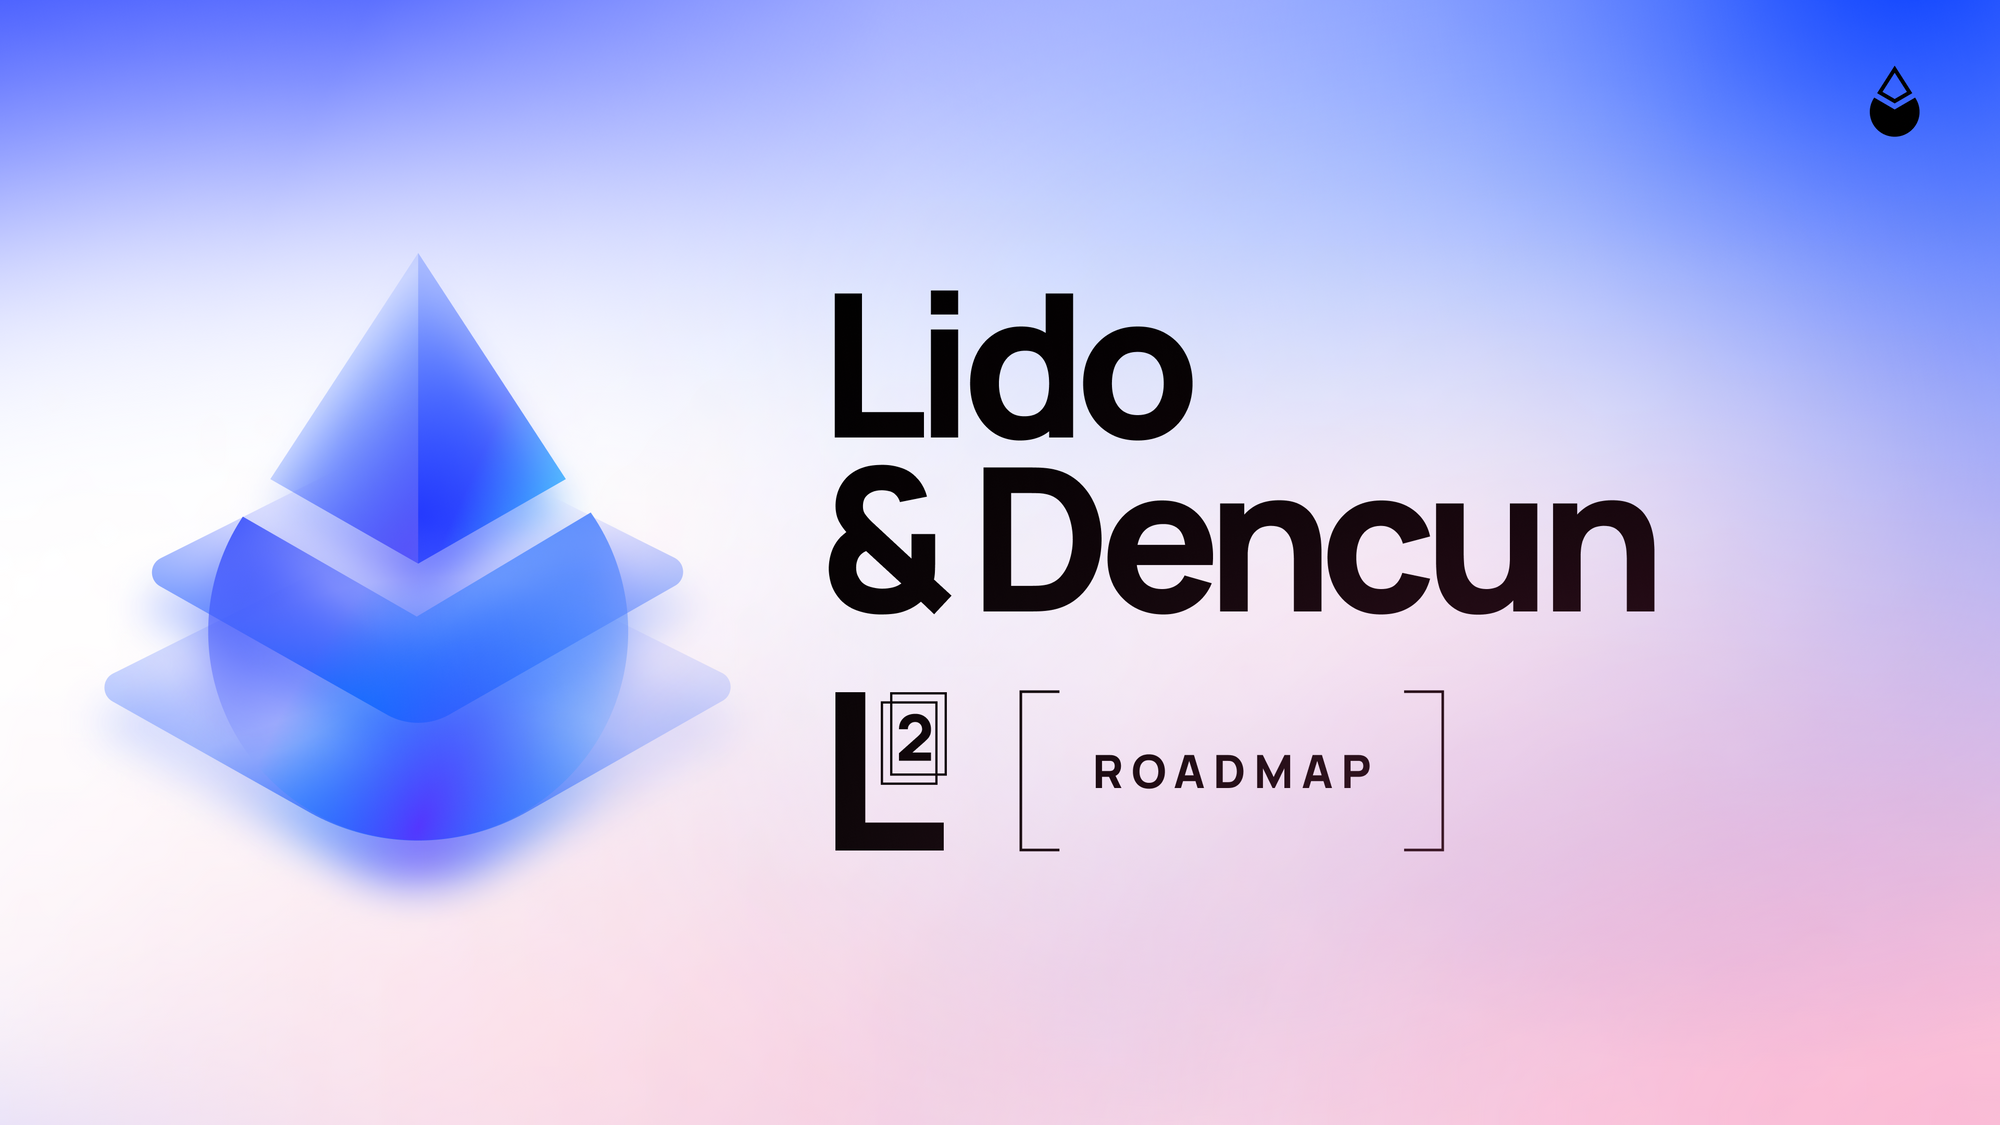 Lido & Dencun: A Layer 2 Roadmap